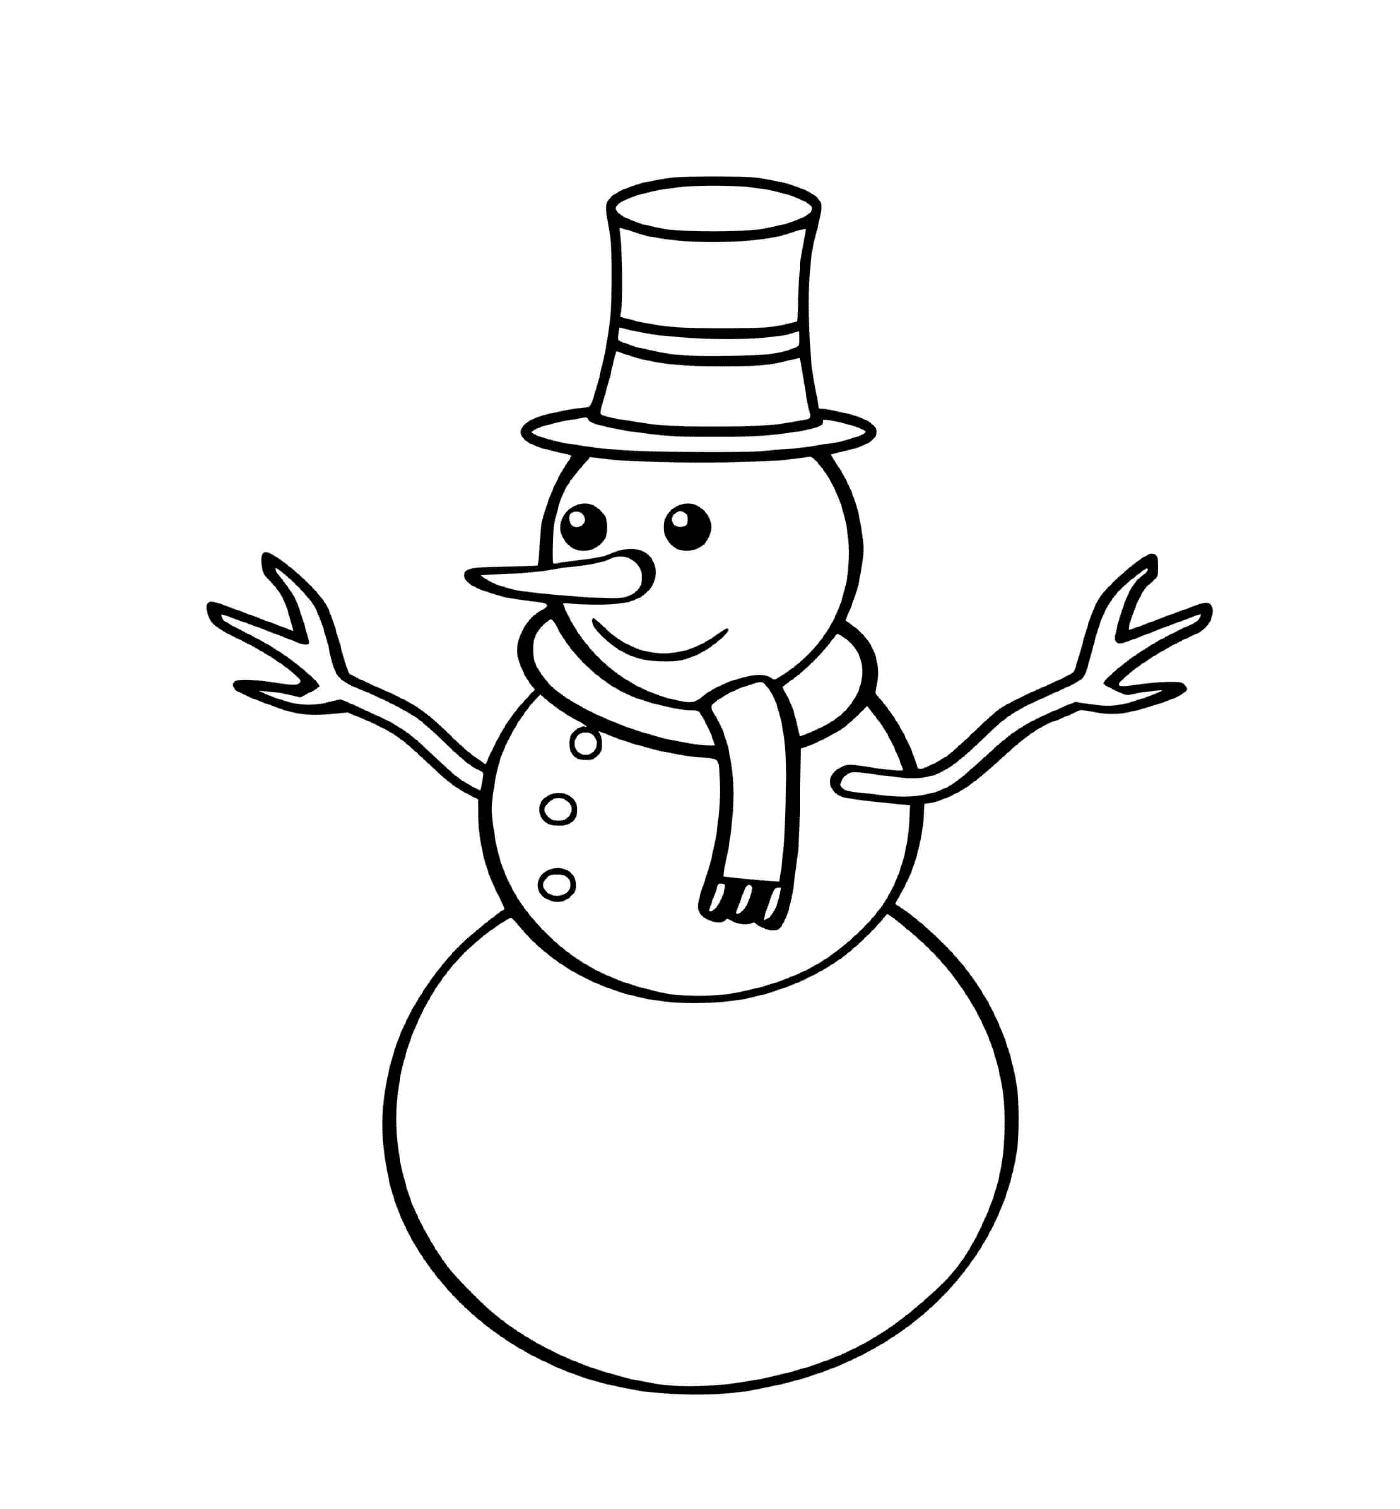  Hombre de nieve fácil para niños pequeños 